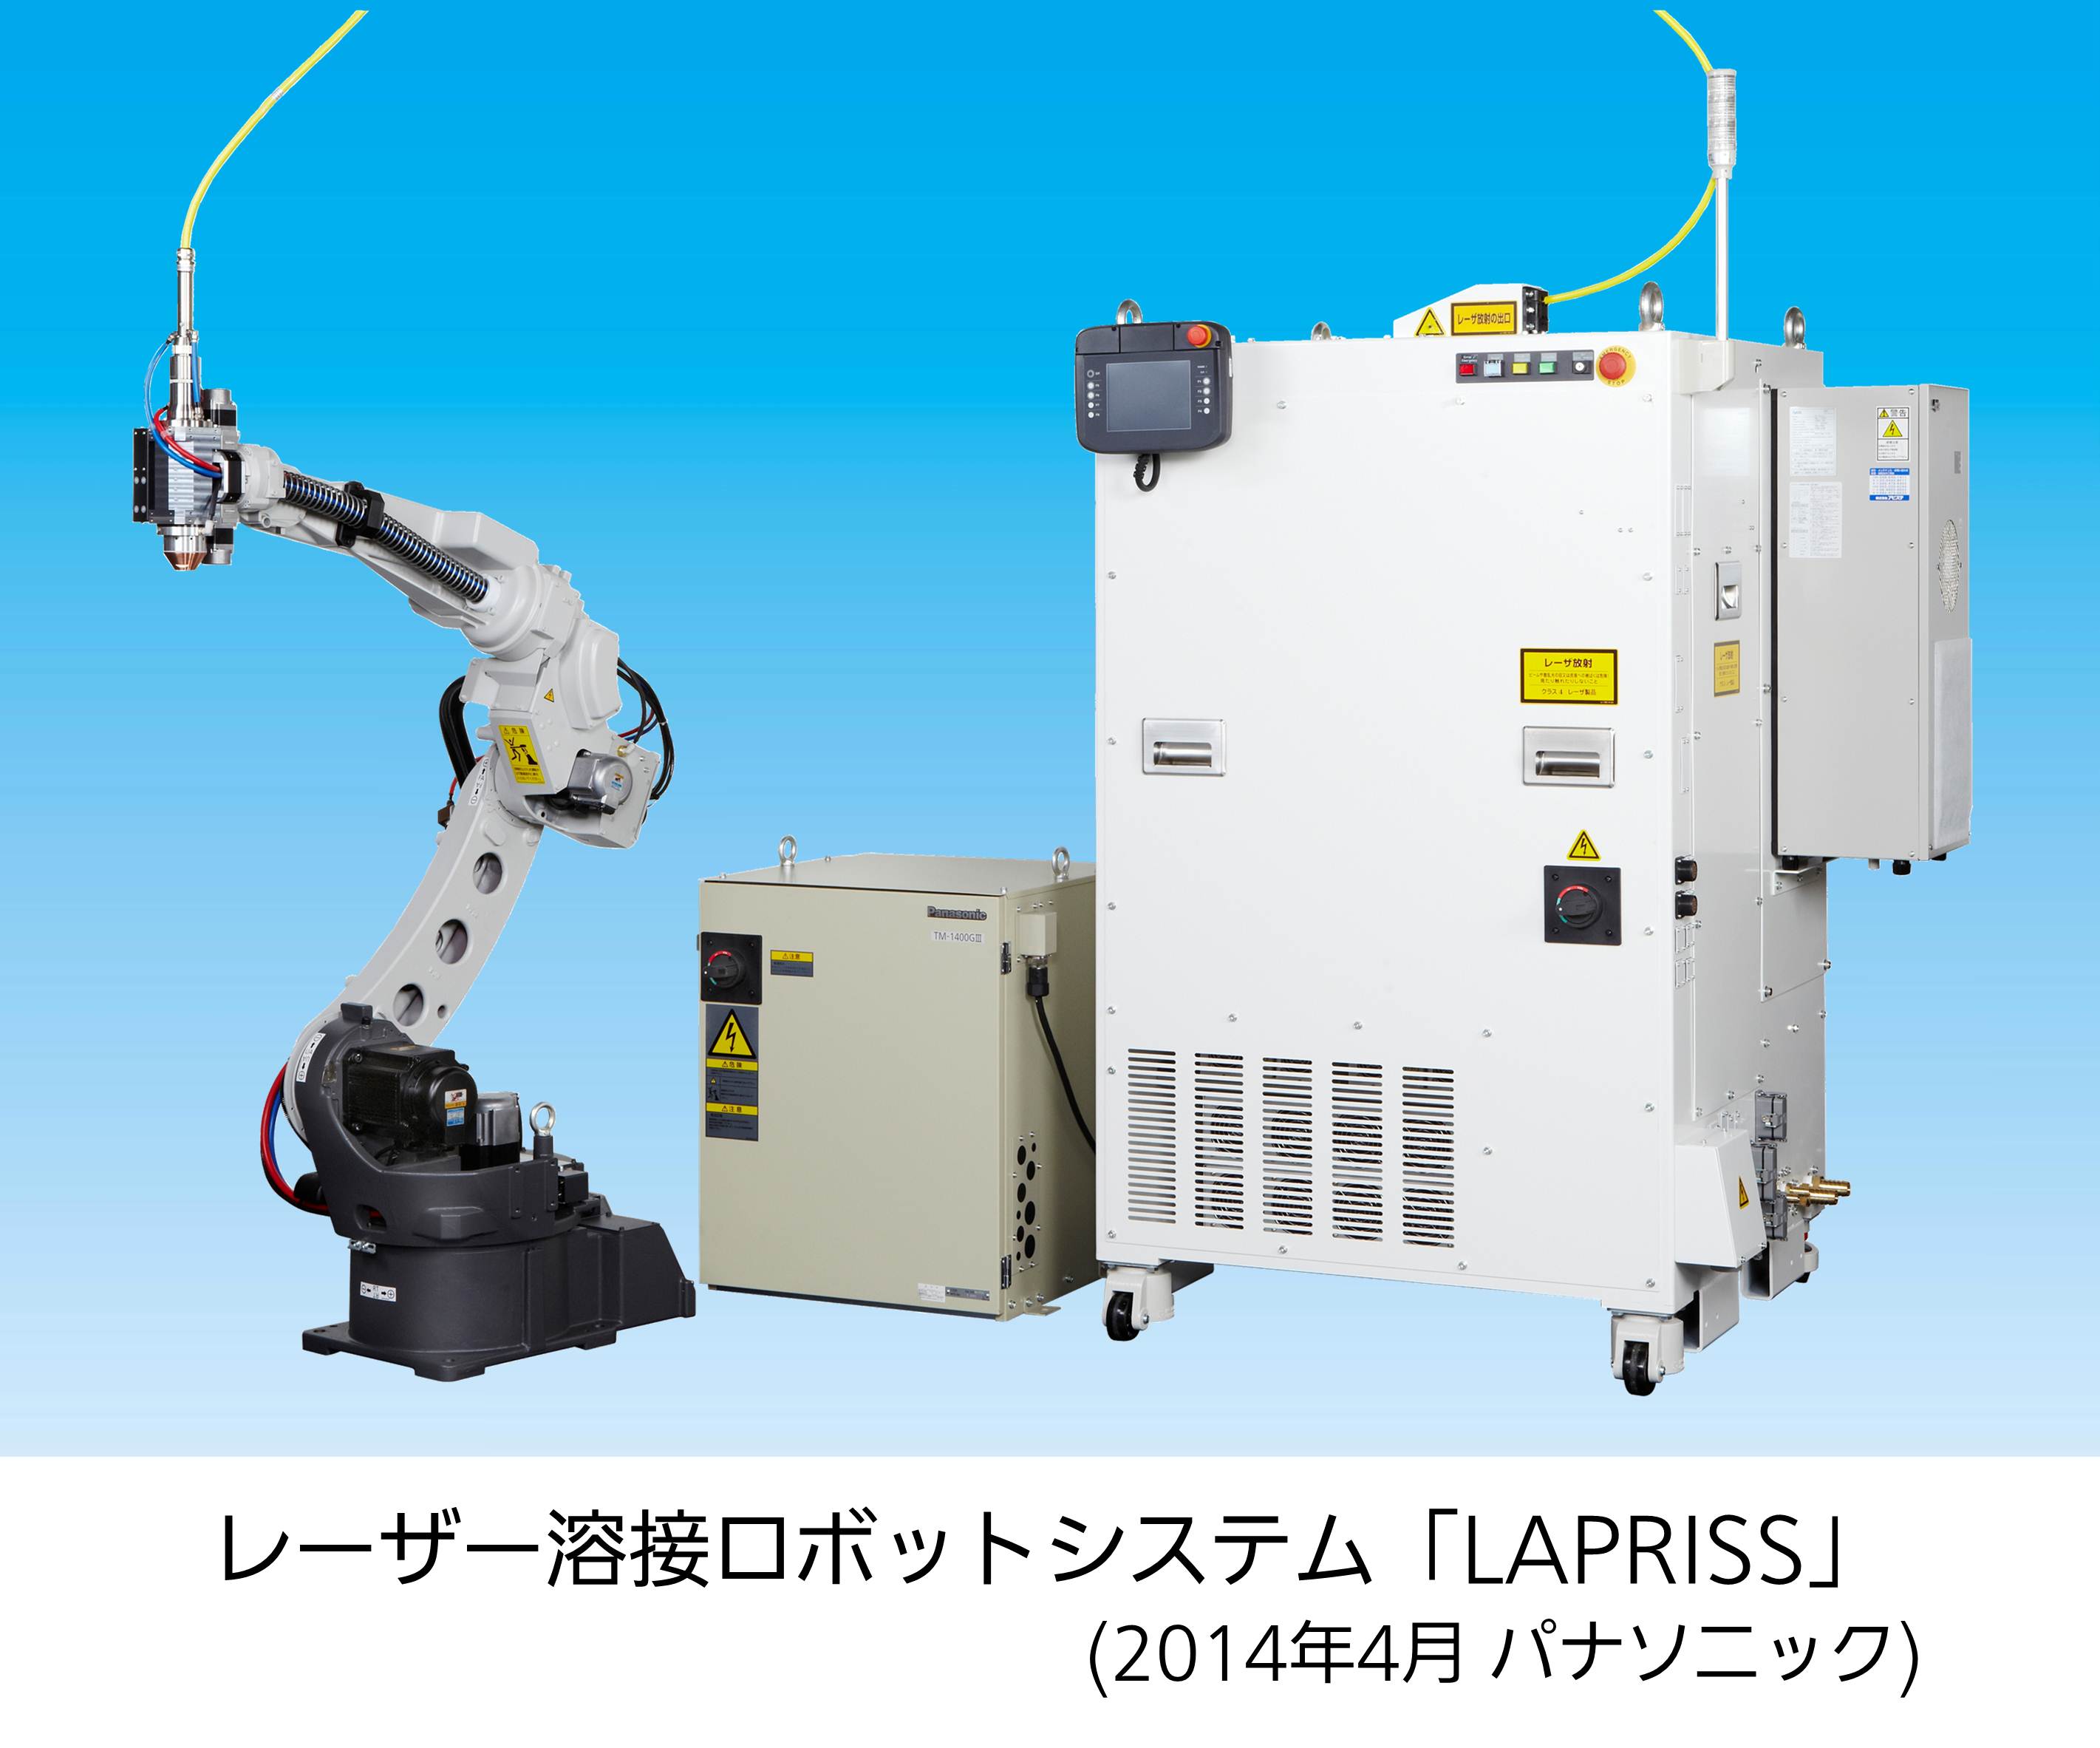 レーザー溶接ロボットシステム「LAPRISS（ラプリス）」 